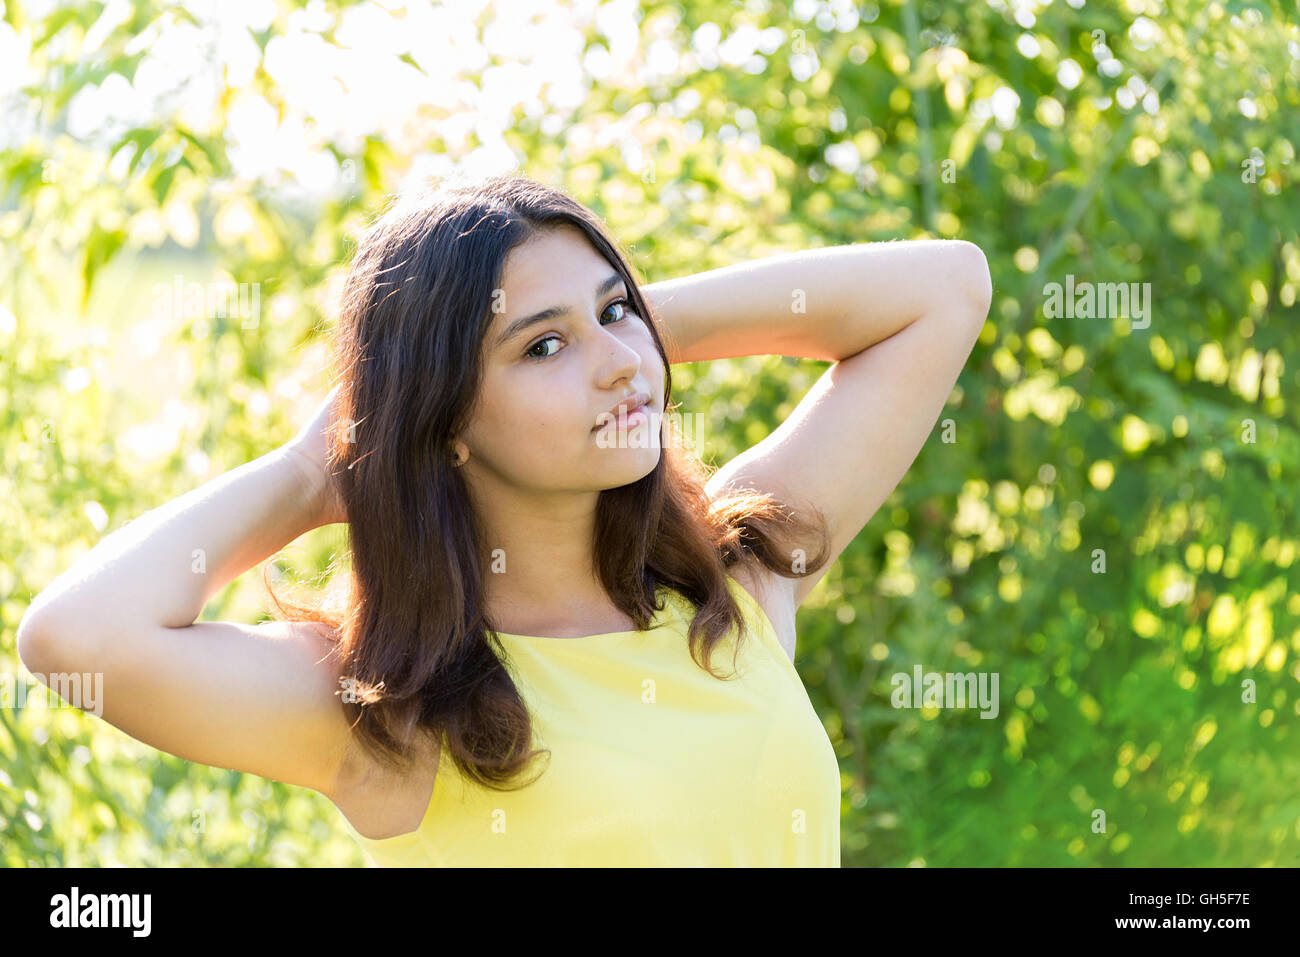 Porträt eines 14-jährigen Mädchens im Freien an einem sonnigen Tag Stockfoto